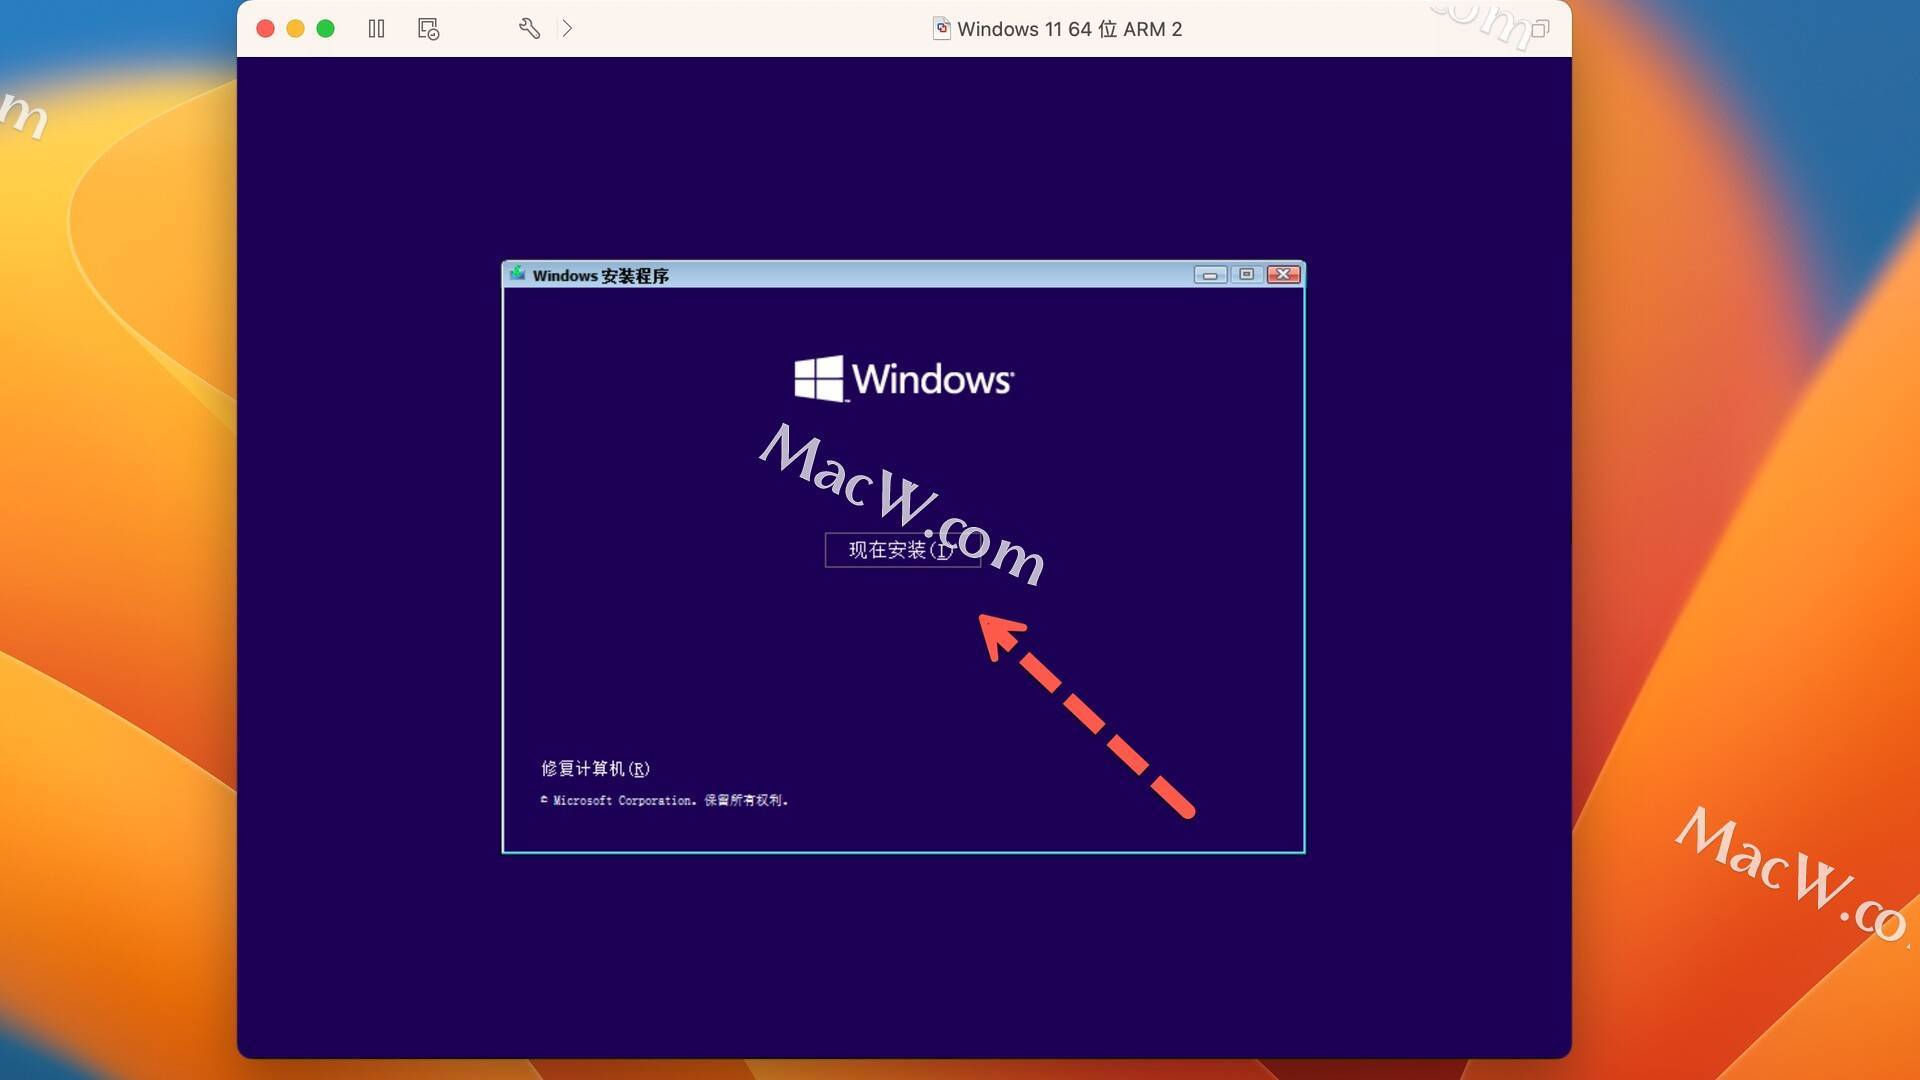 手把手教在VMware虚拟机中安装Windows11系统